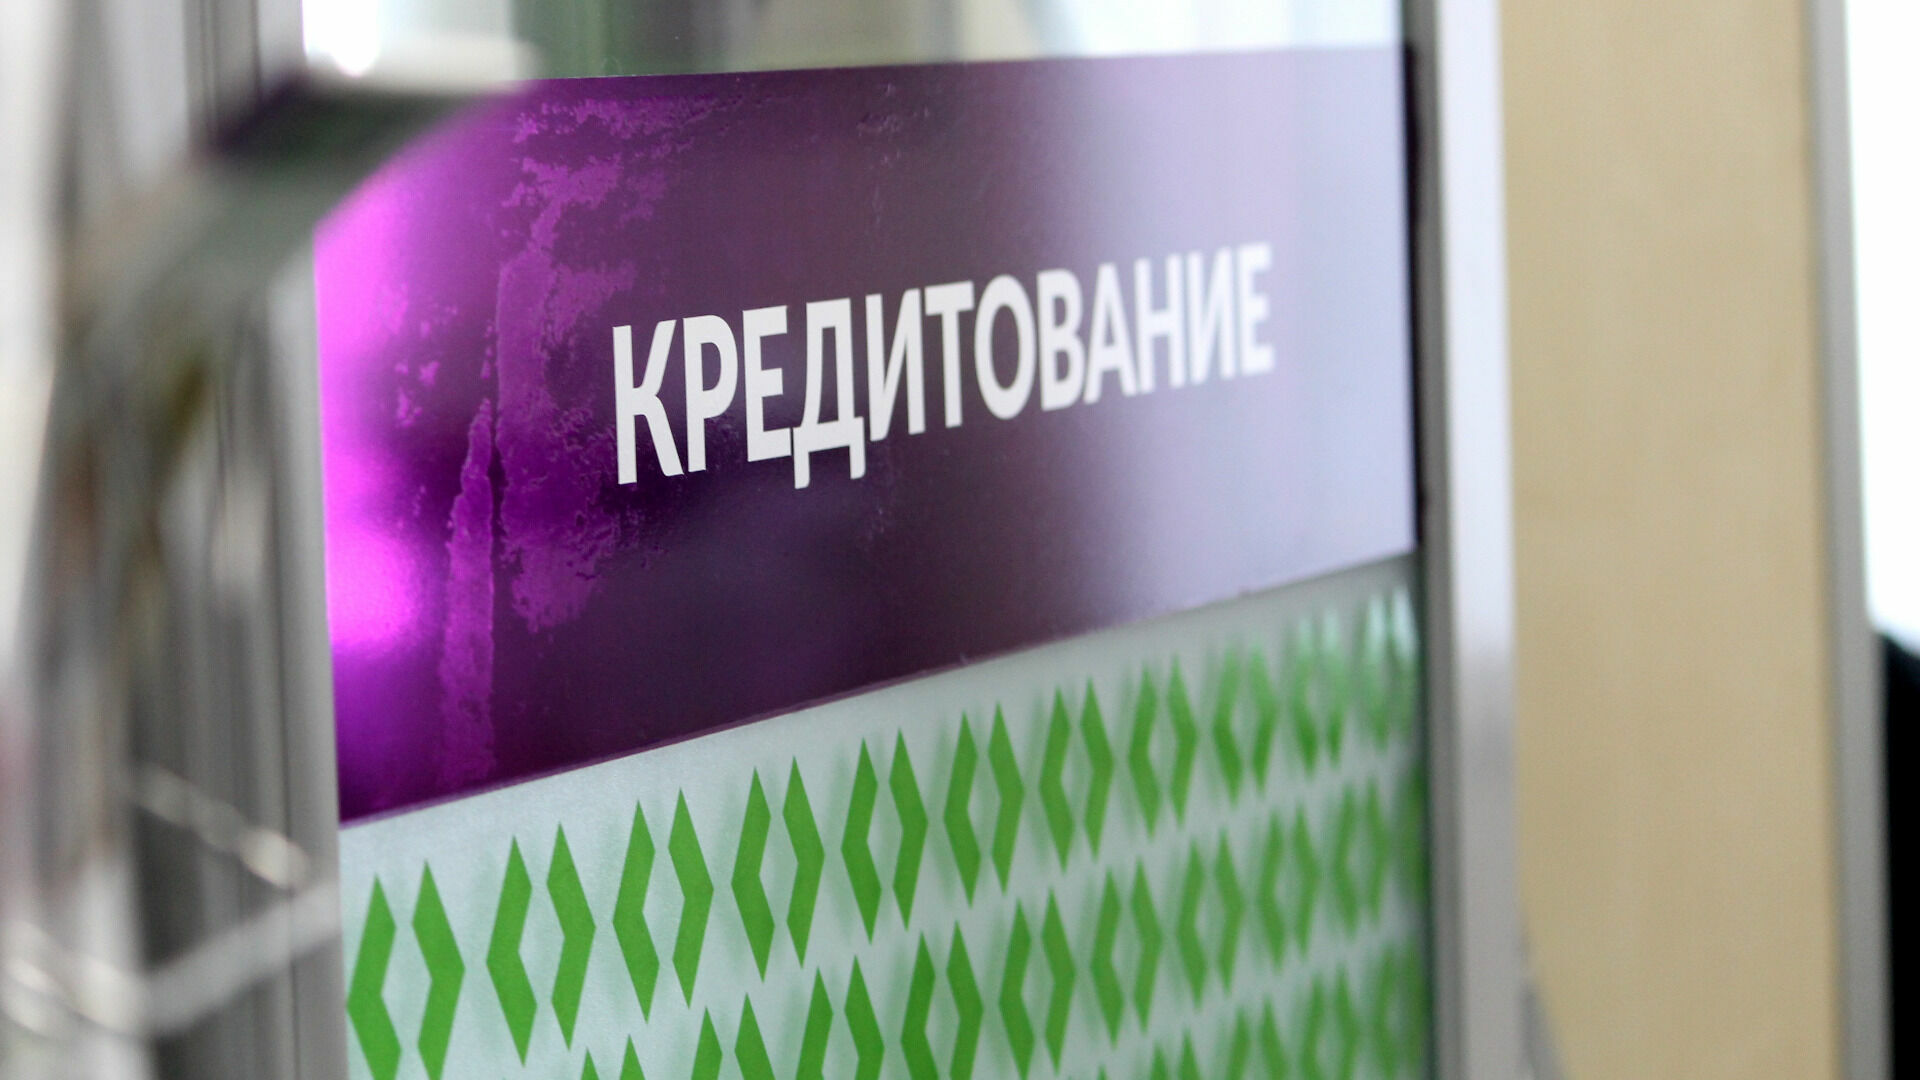 264 тысячи рублей задолжал банкам каждый волгоградец